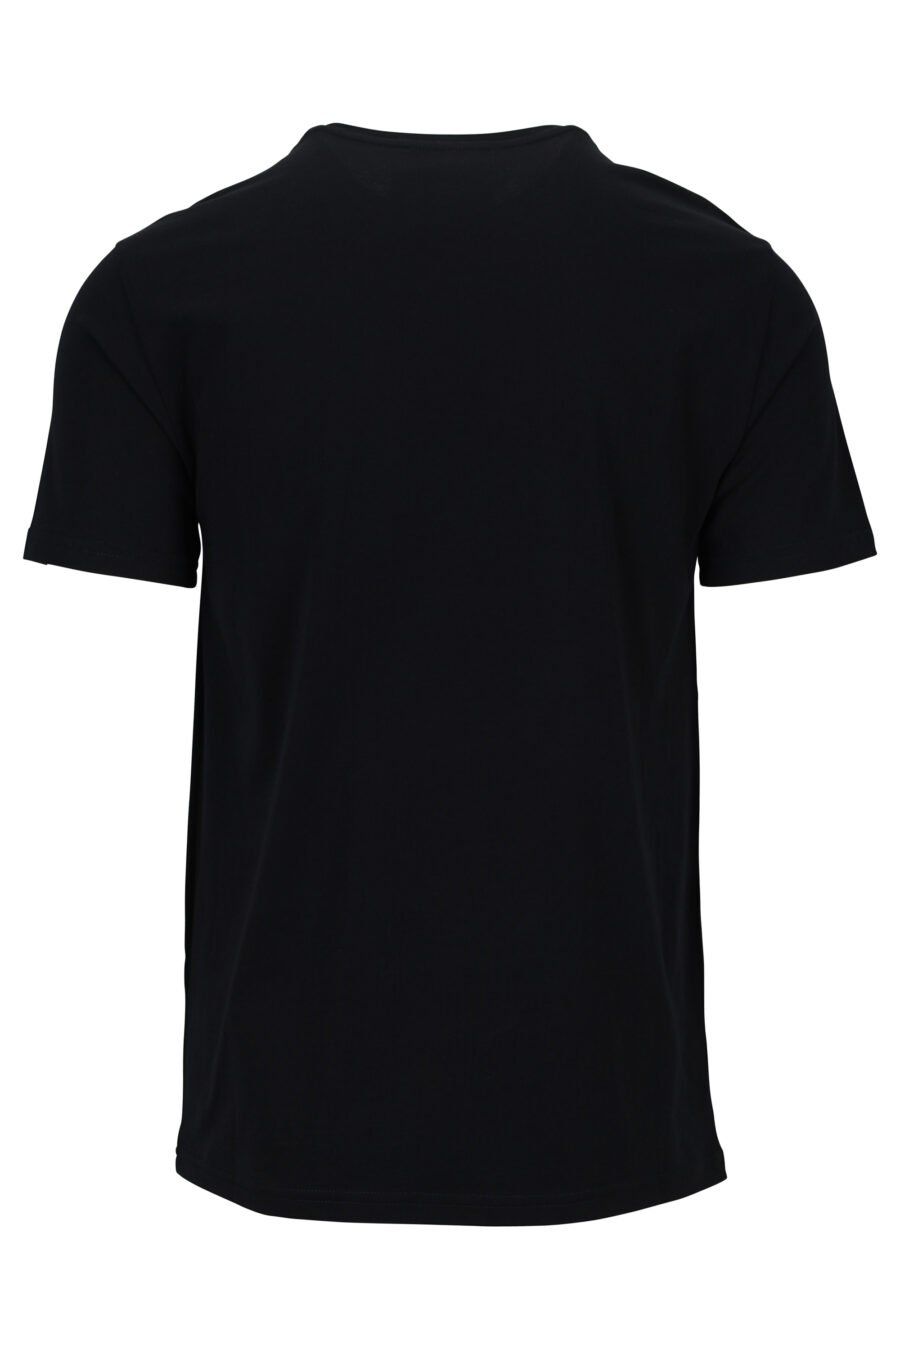 Schwarzes Öko-T-Shirt mit Bärchen-Mini-Logo - 889316853063 1